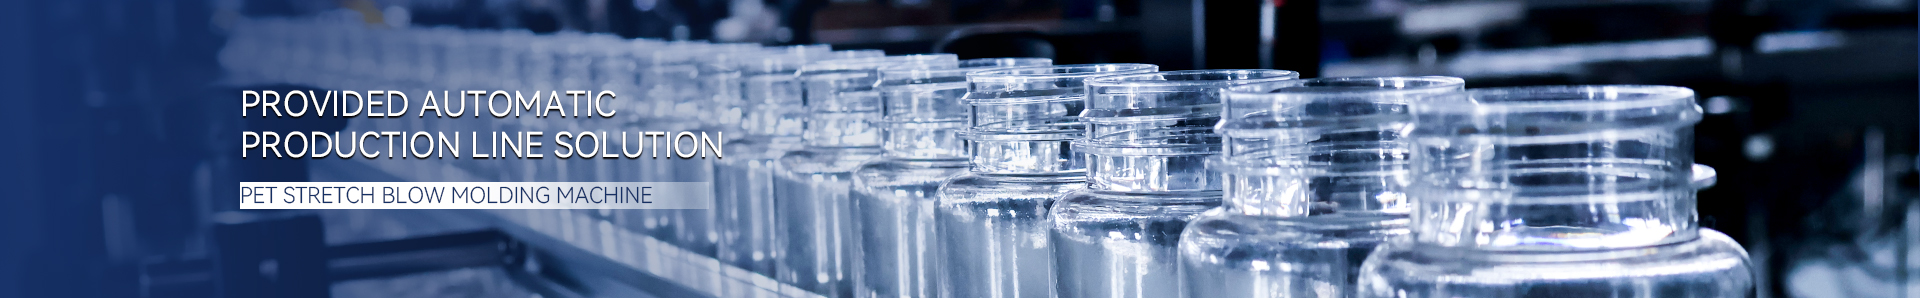 ماكينة تصنيع قوالب نفخ الزجاجات البلاستيكية لتخزين أغذية الحيوانات الأليفة